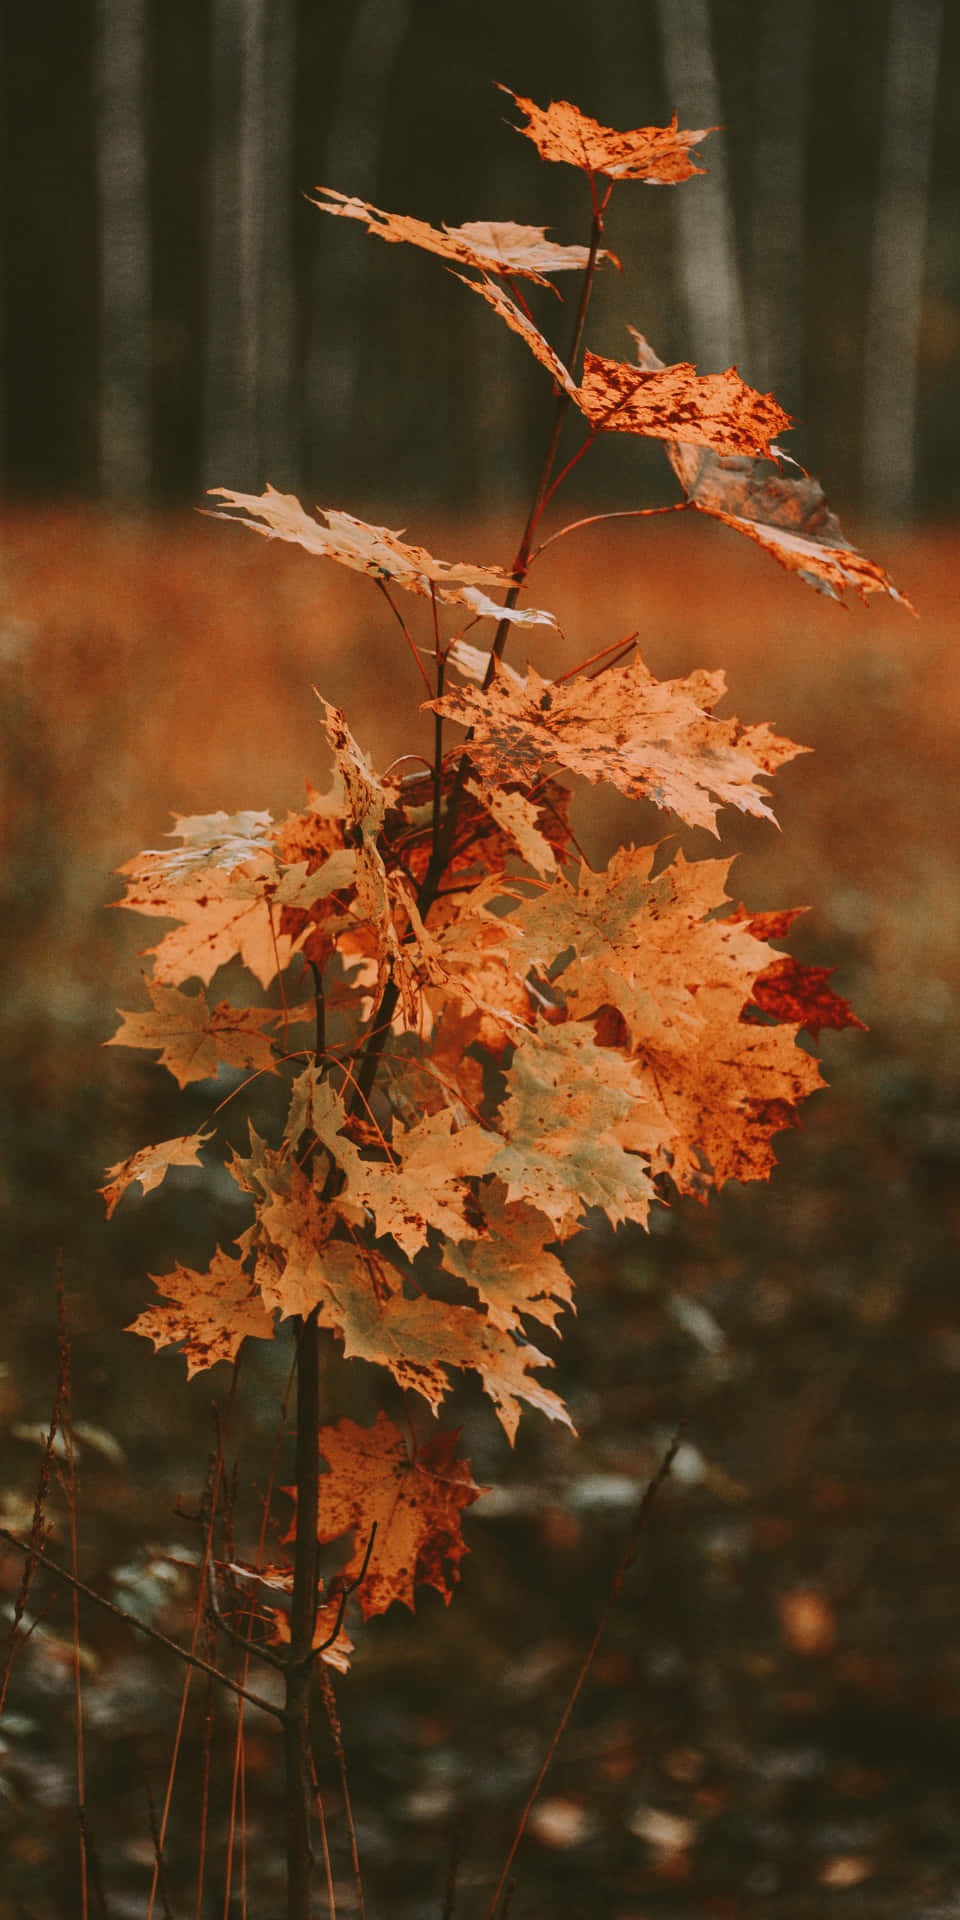 Enhöstsyn Av Pixel 3 Med Livfullt Färgade Löv.